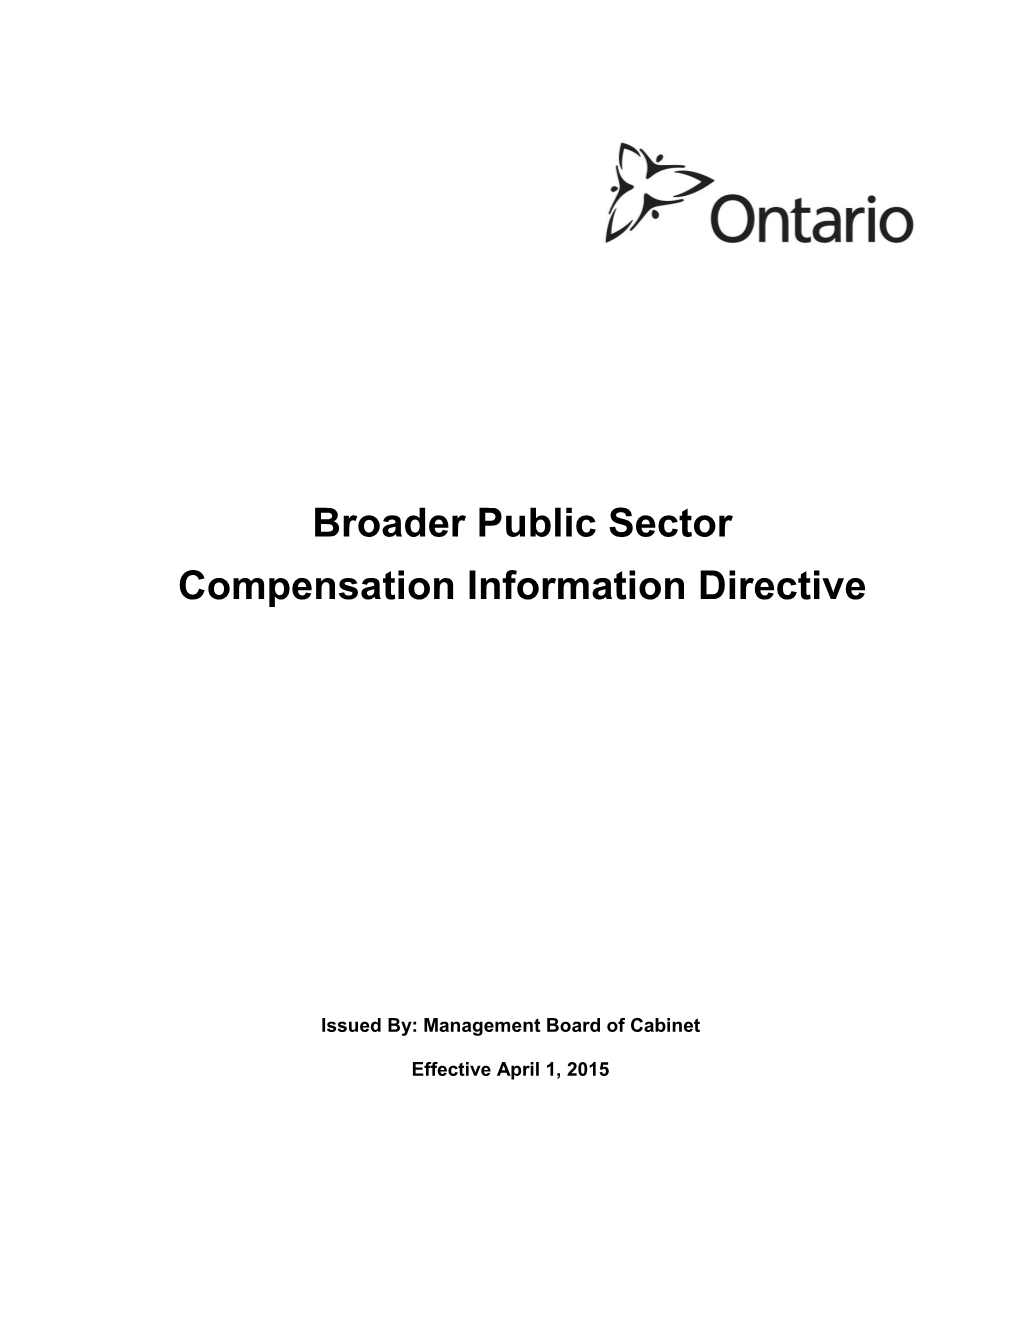 Broader Public Sector Compensation Information Directive